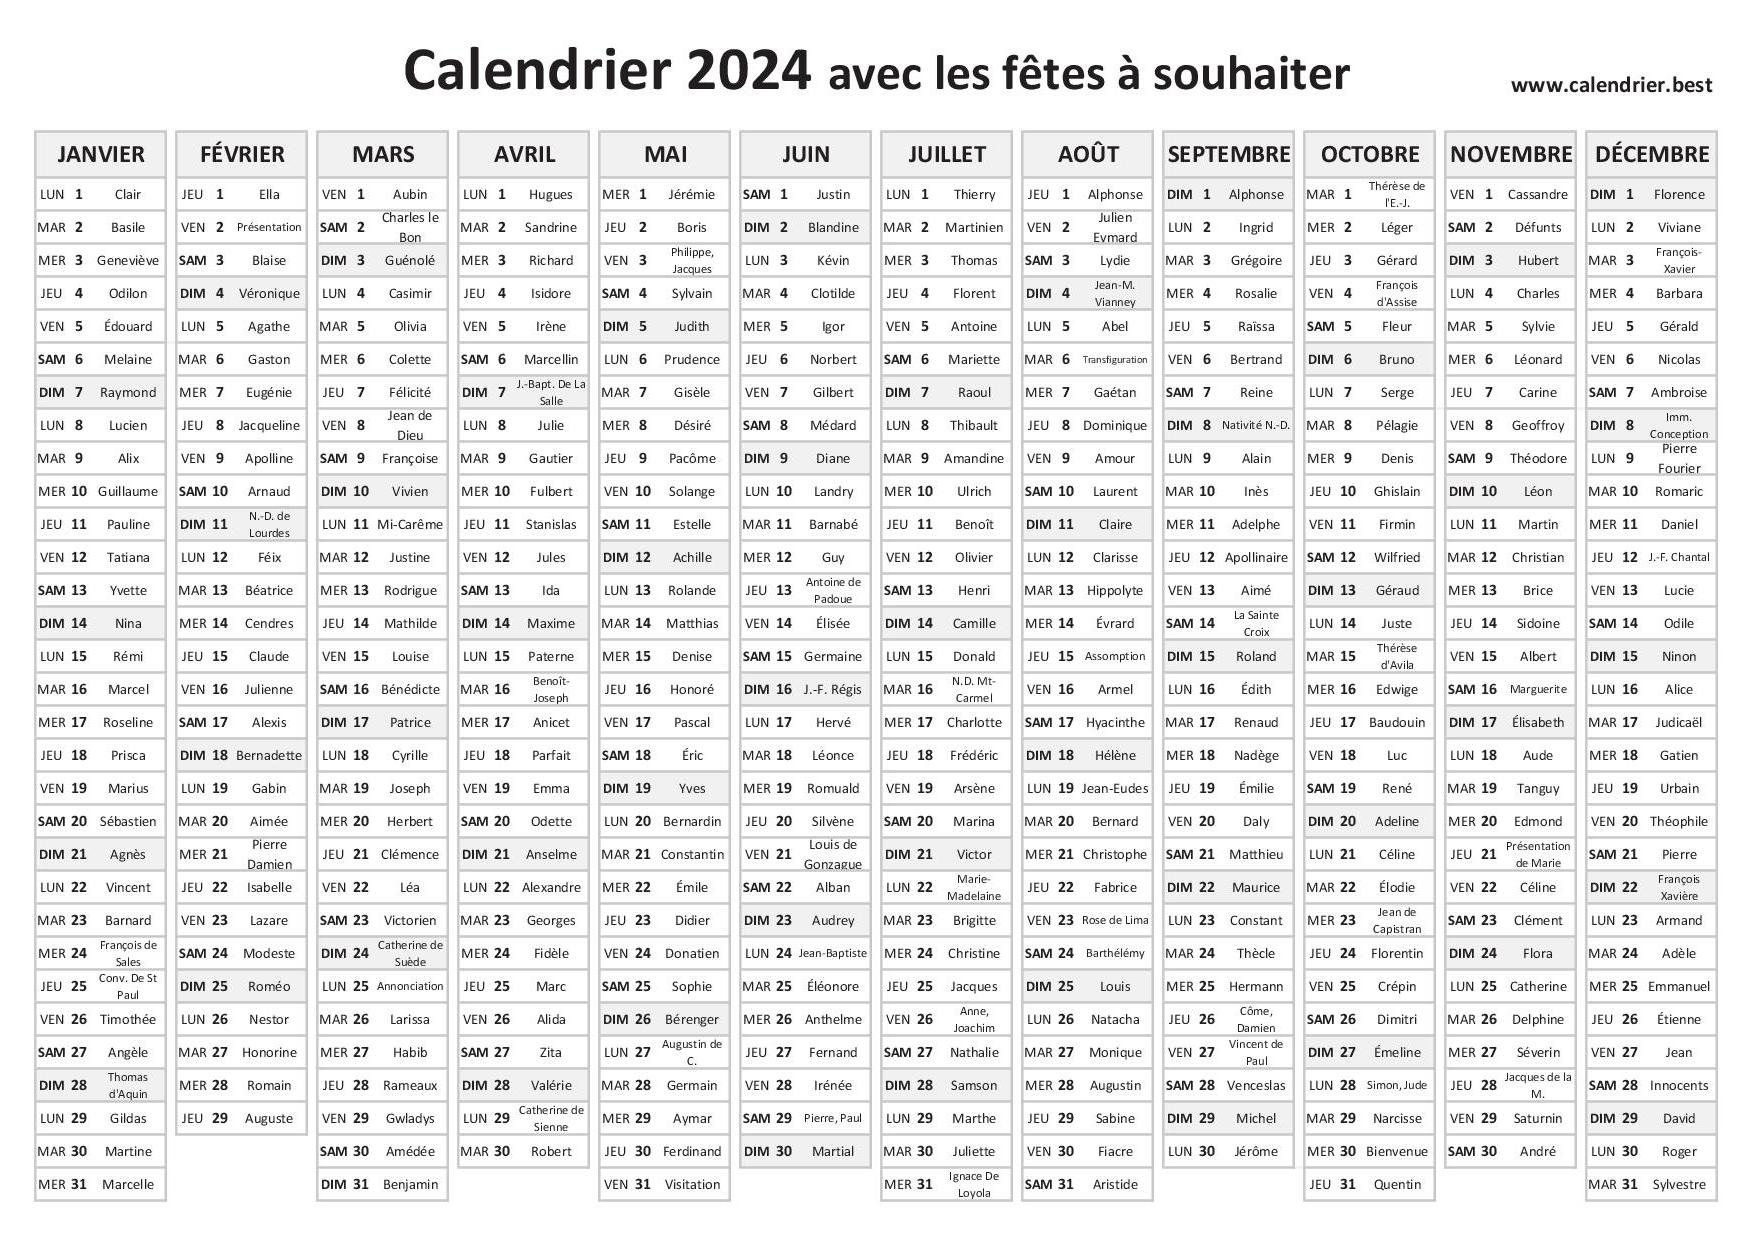 Calendrier des Saints et Fêtes 2024 à consulter et imprimer en PDF